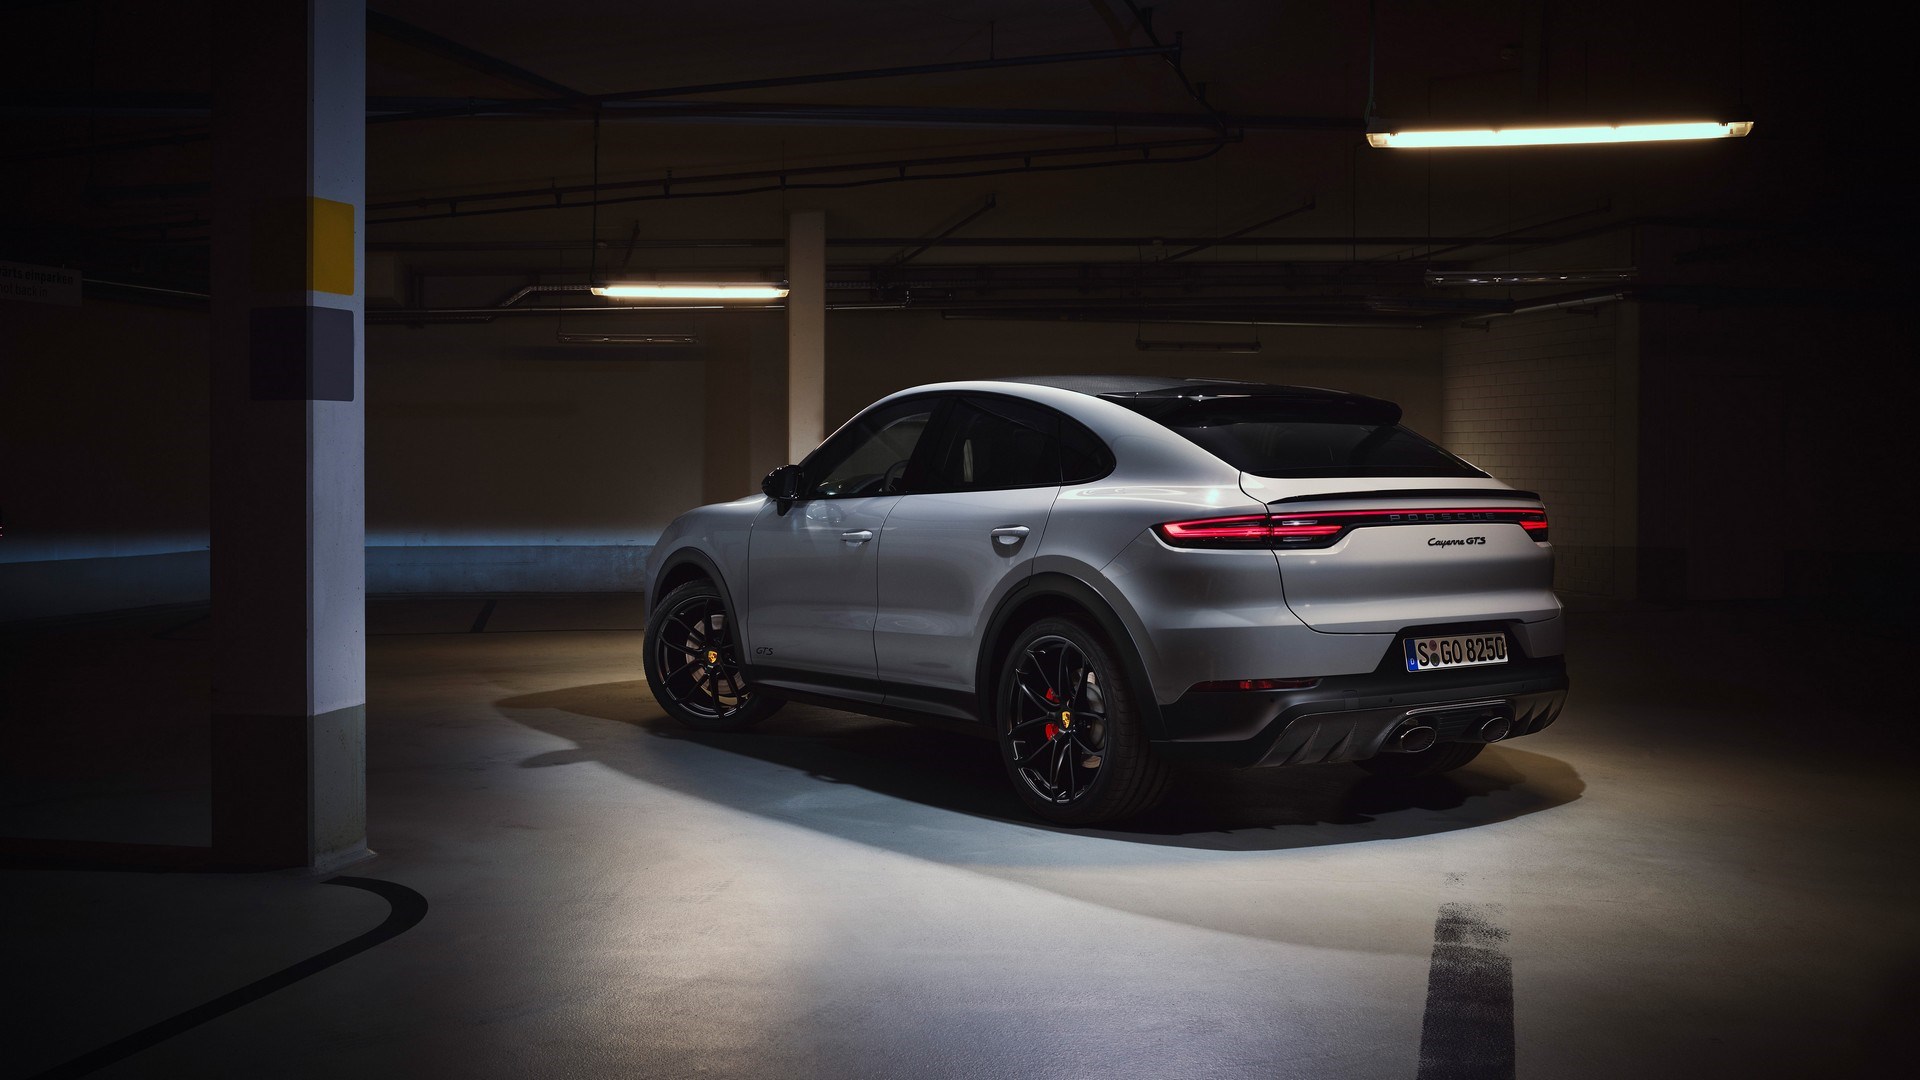 2020 Porsche Cayenne GTS modelleri tanıtıldı